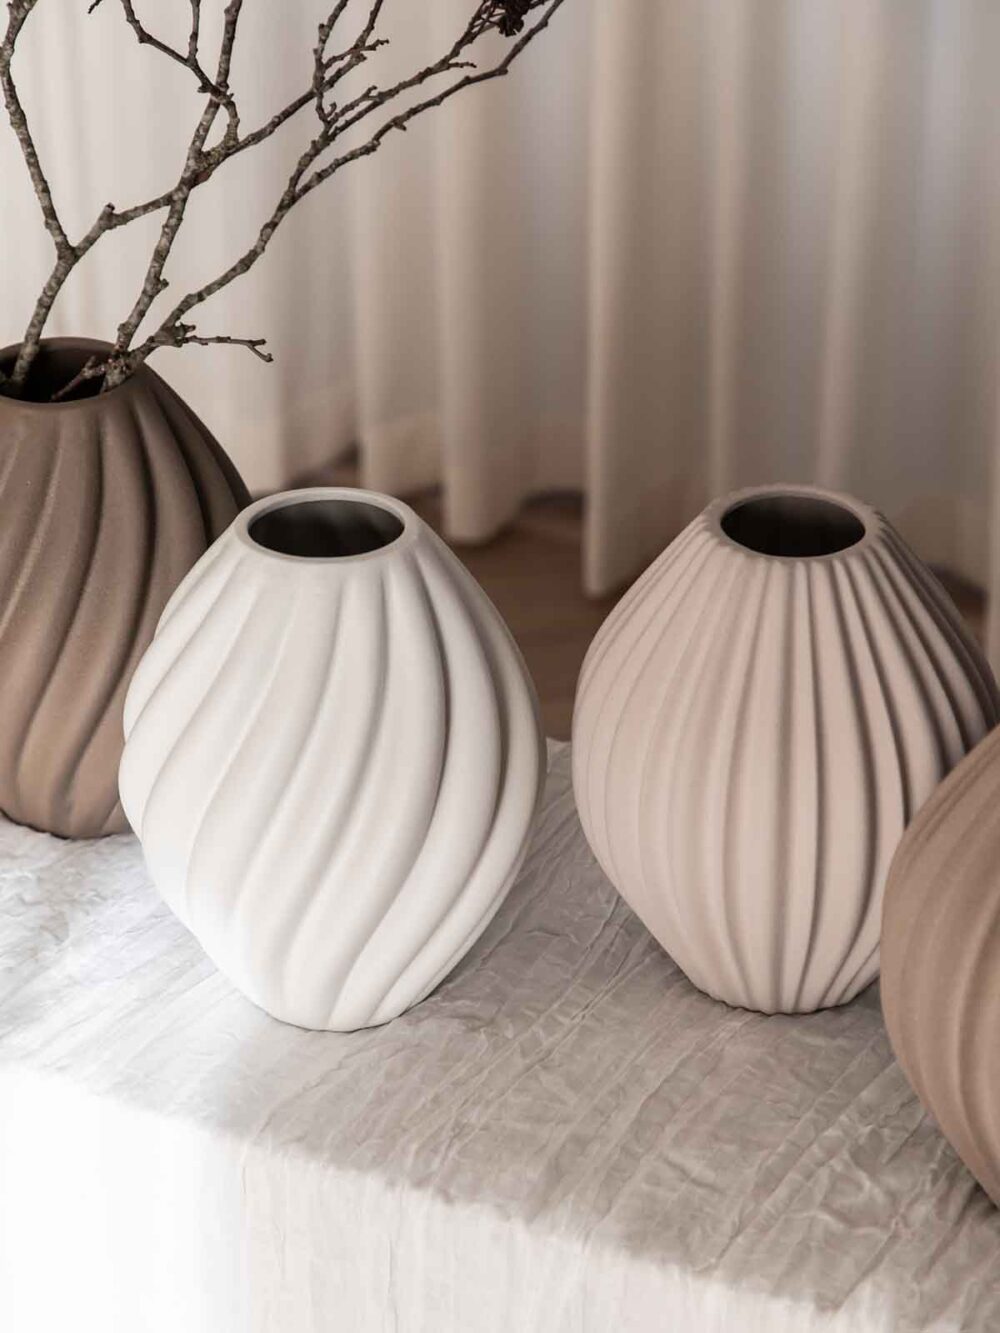 specktrum keramik vase, luna, sandfarvet vase, lysebrun vase, borddækning, bolig interiør, dansk design